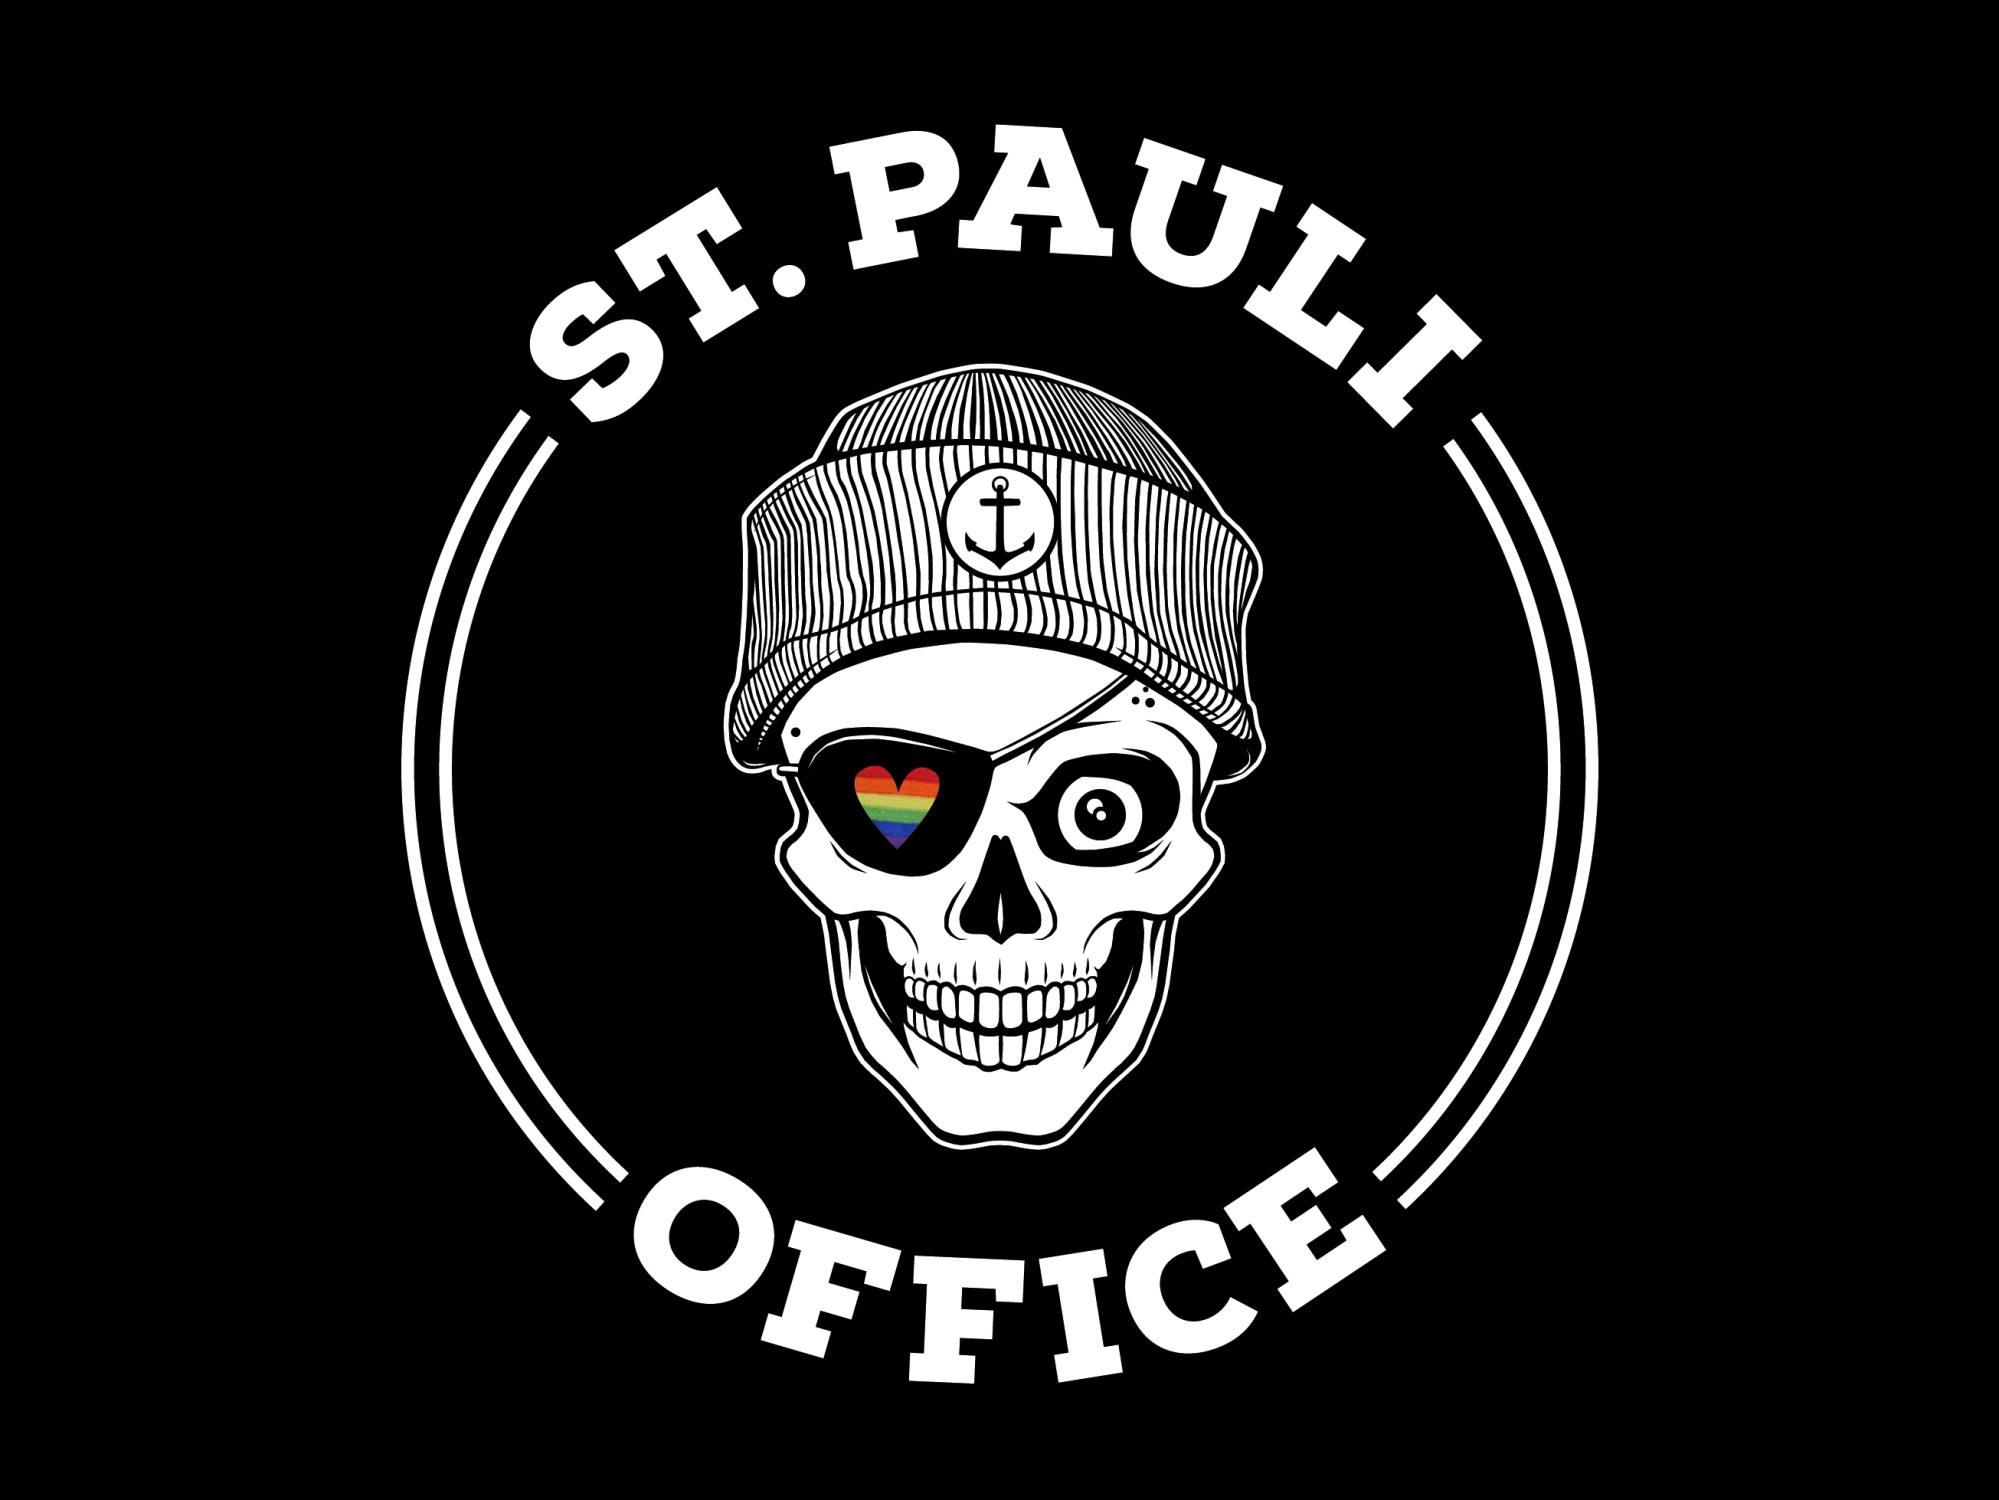 Wycieczka St. Pauli Queer: 100 lat dumy